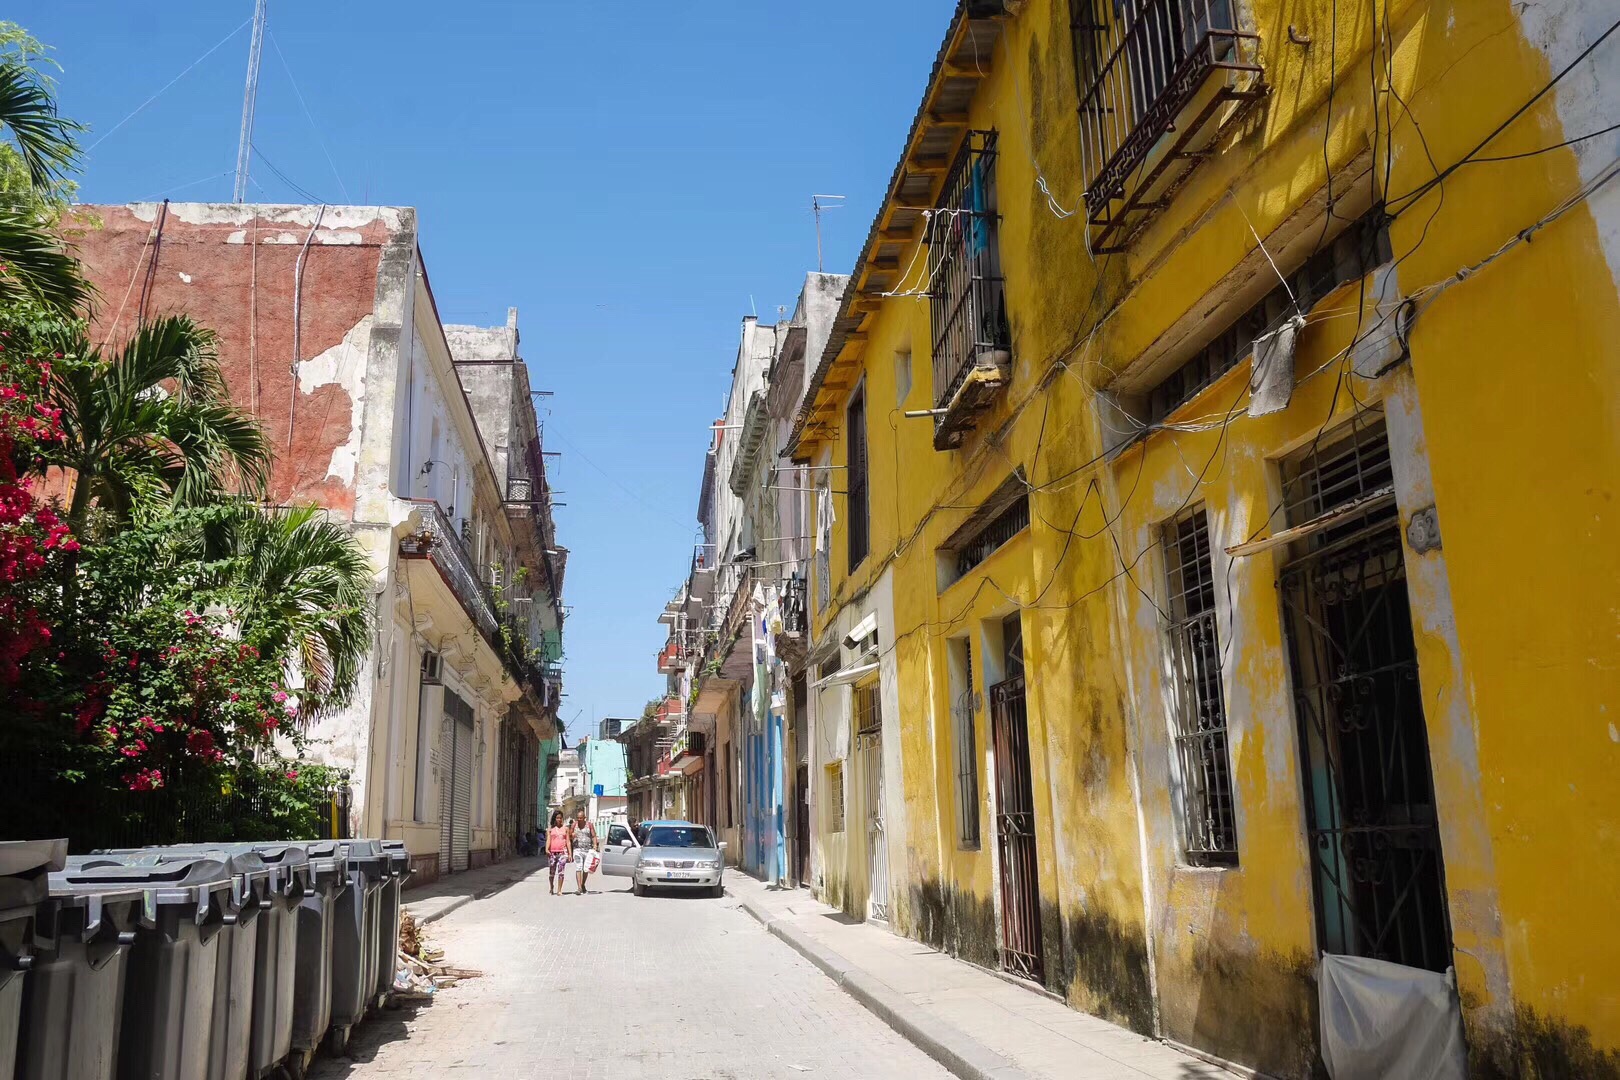 这个午后，忽然间想起古巴，那焦黄的灯光，满大街的音乐，微笑的人们，一下从尘封的记忆中蹦出来，眼角瞬间